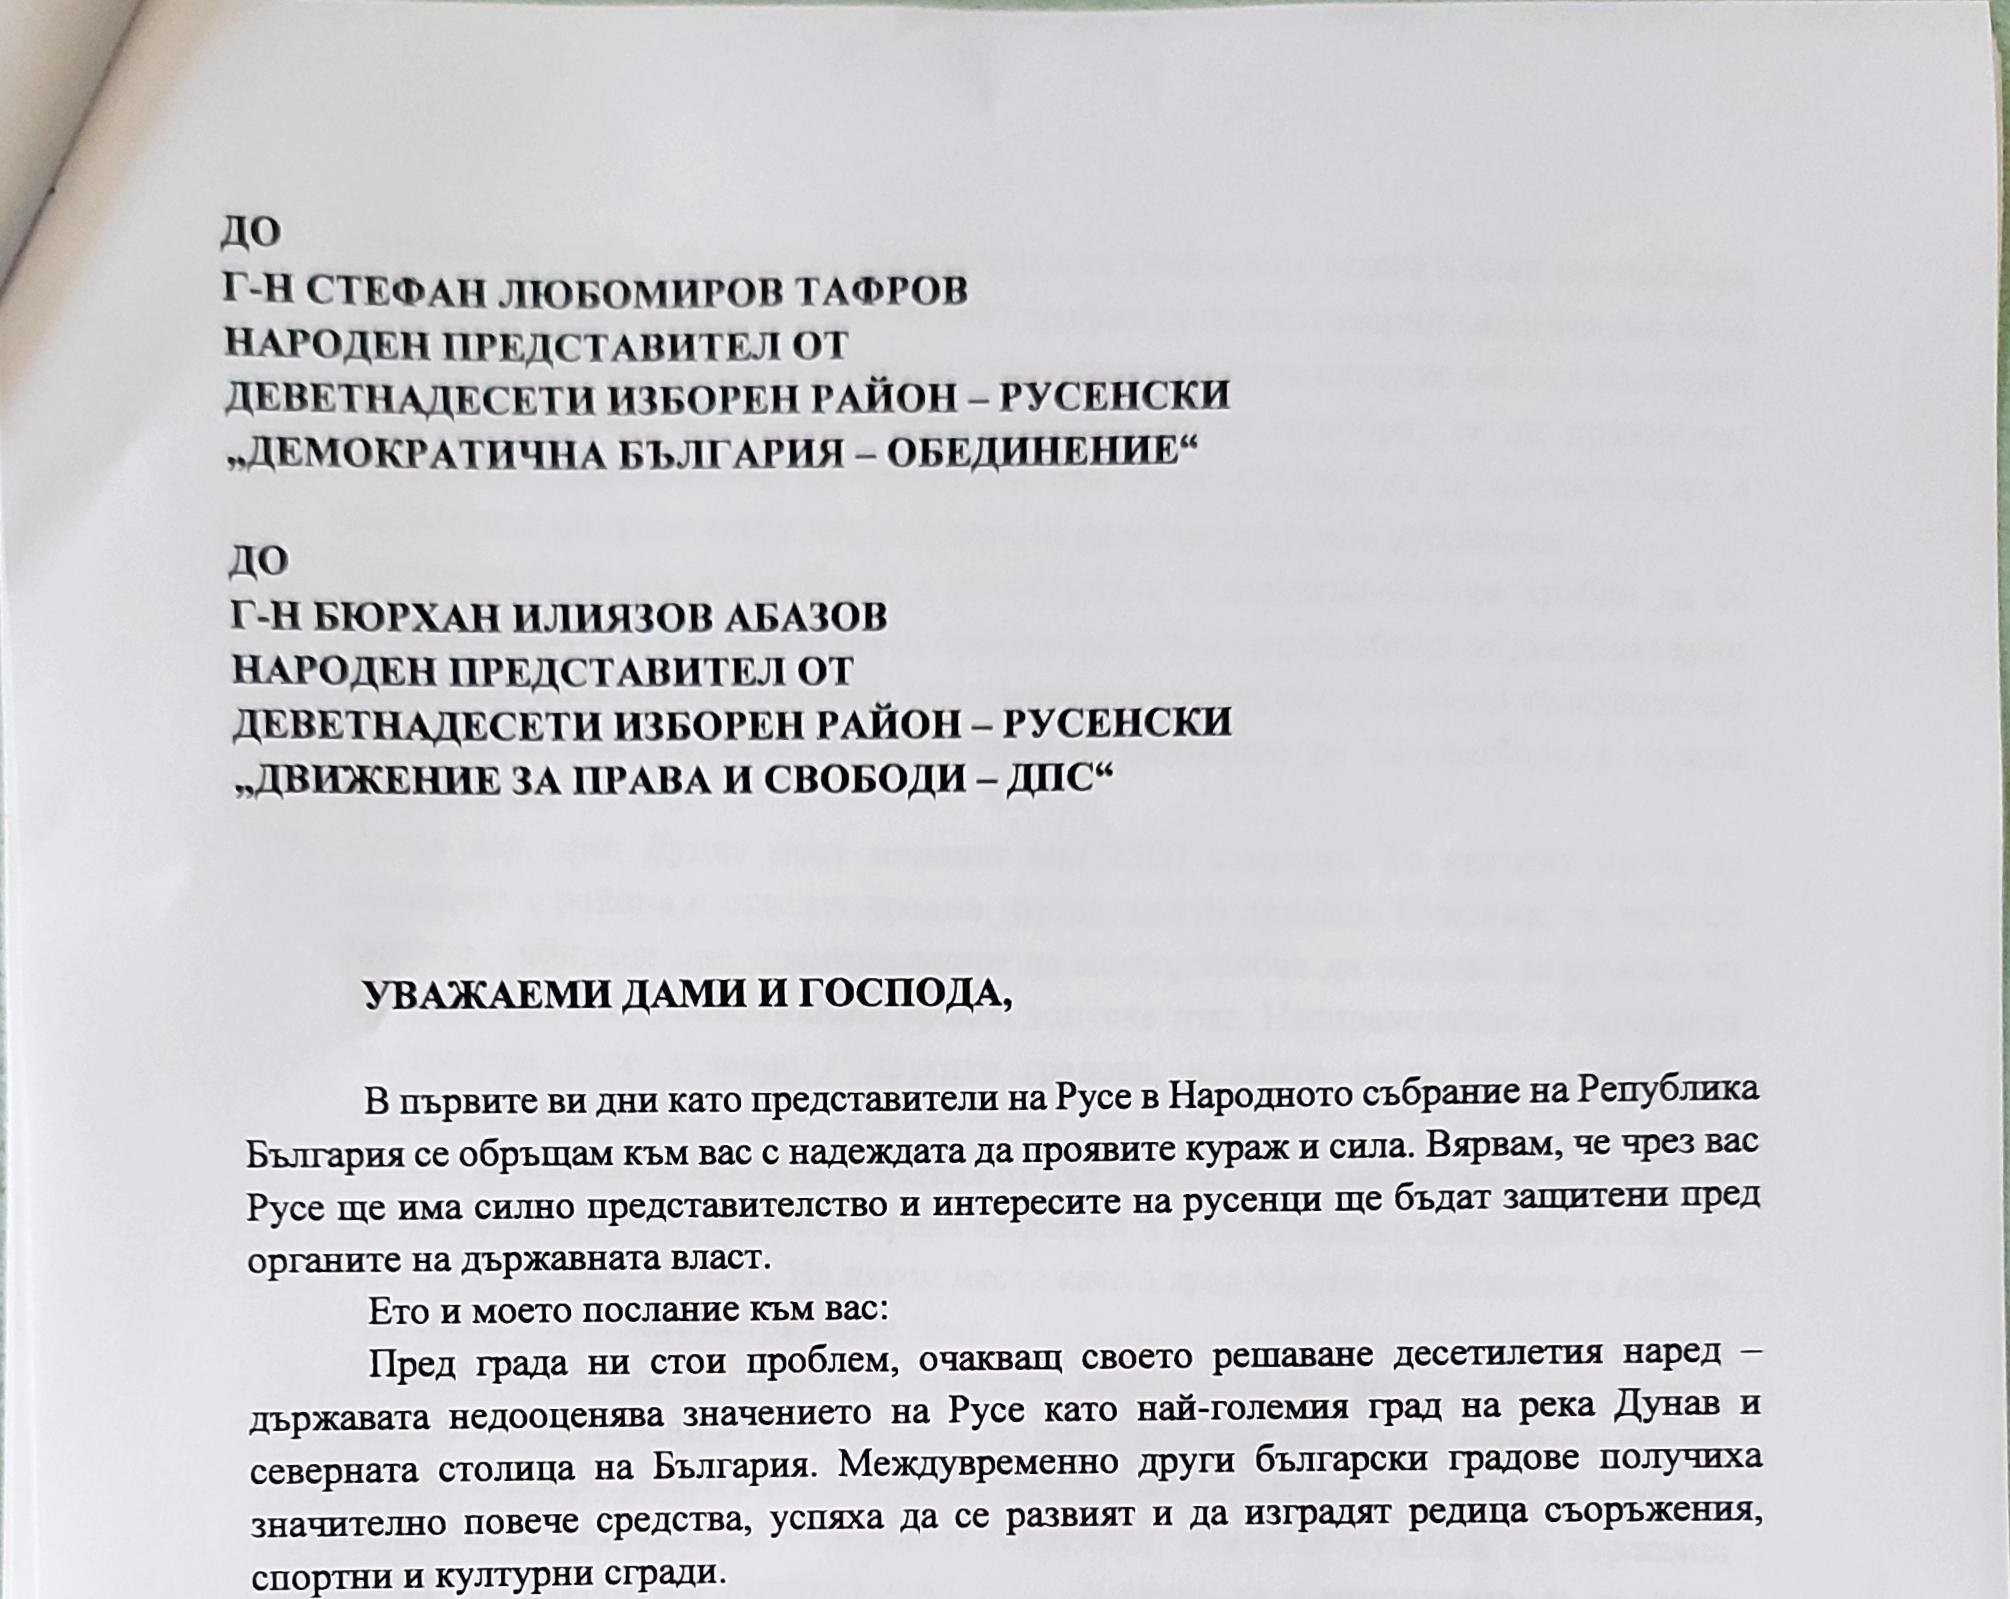 Кметът на Русе Пенчо Милков с писмо-призив до новите народни представители от 19 МИР: “Да работим заедно за Русе”